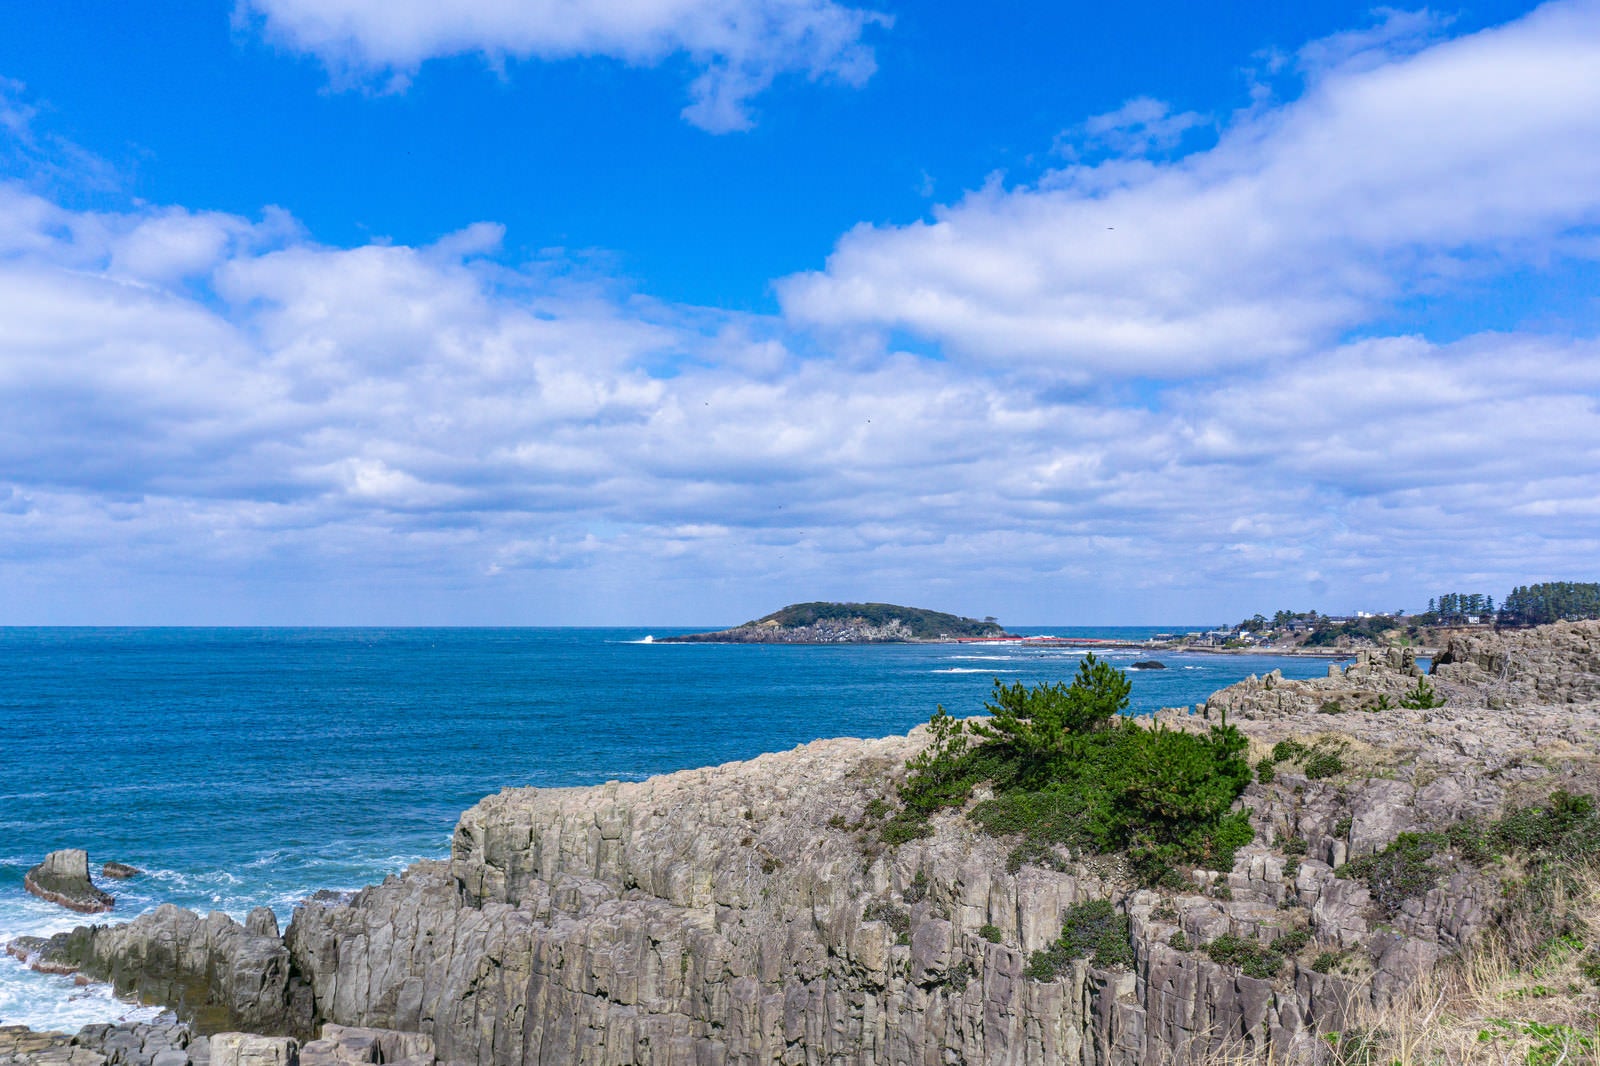 「東尋坊の切り立った崖の向うに打ち寄せる波が白く見える雄島」の写真